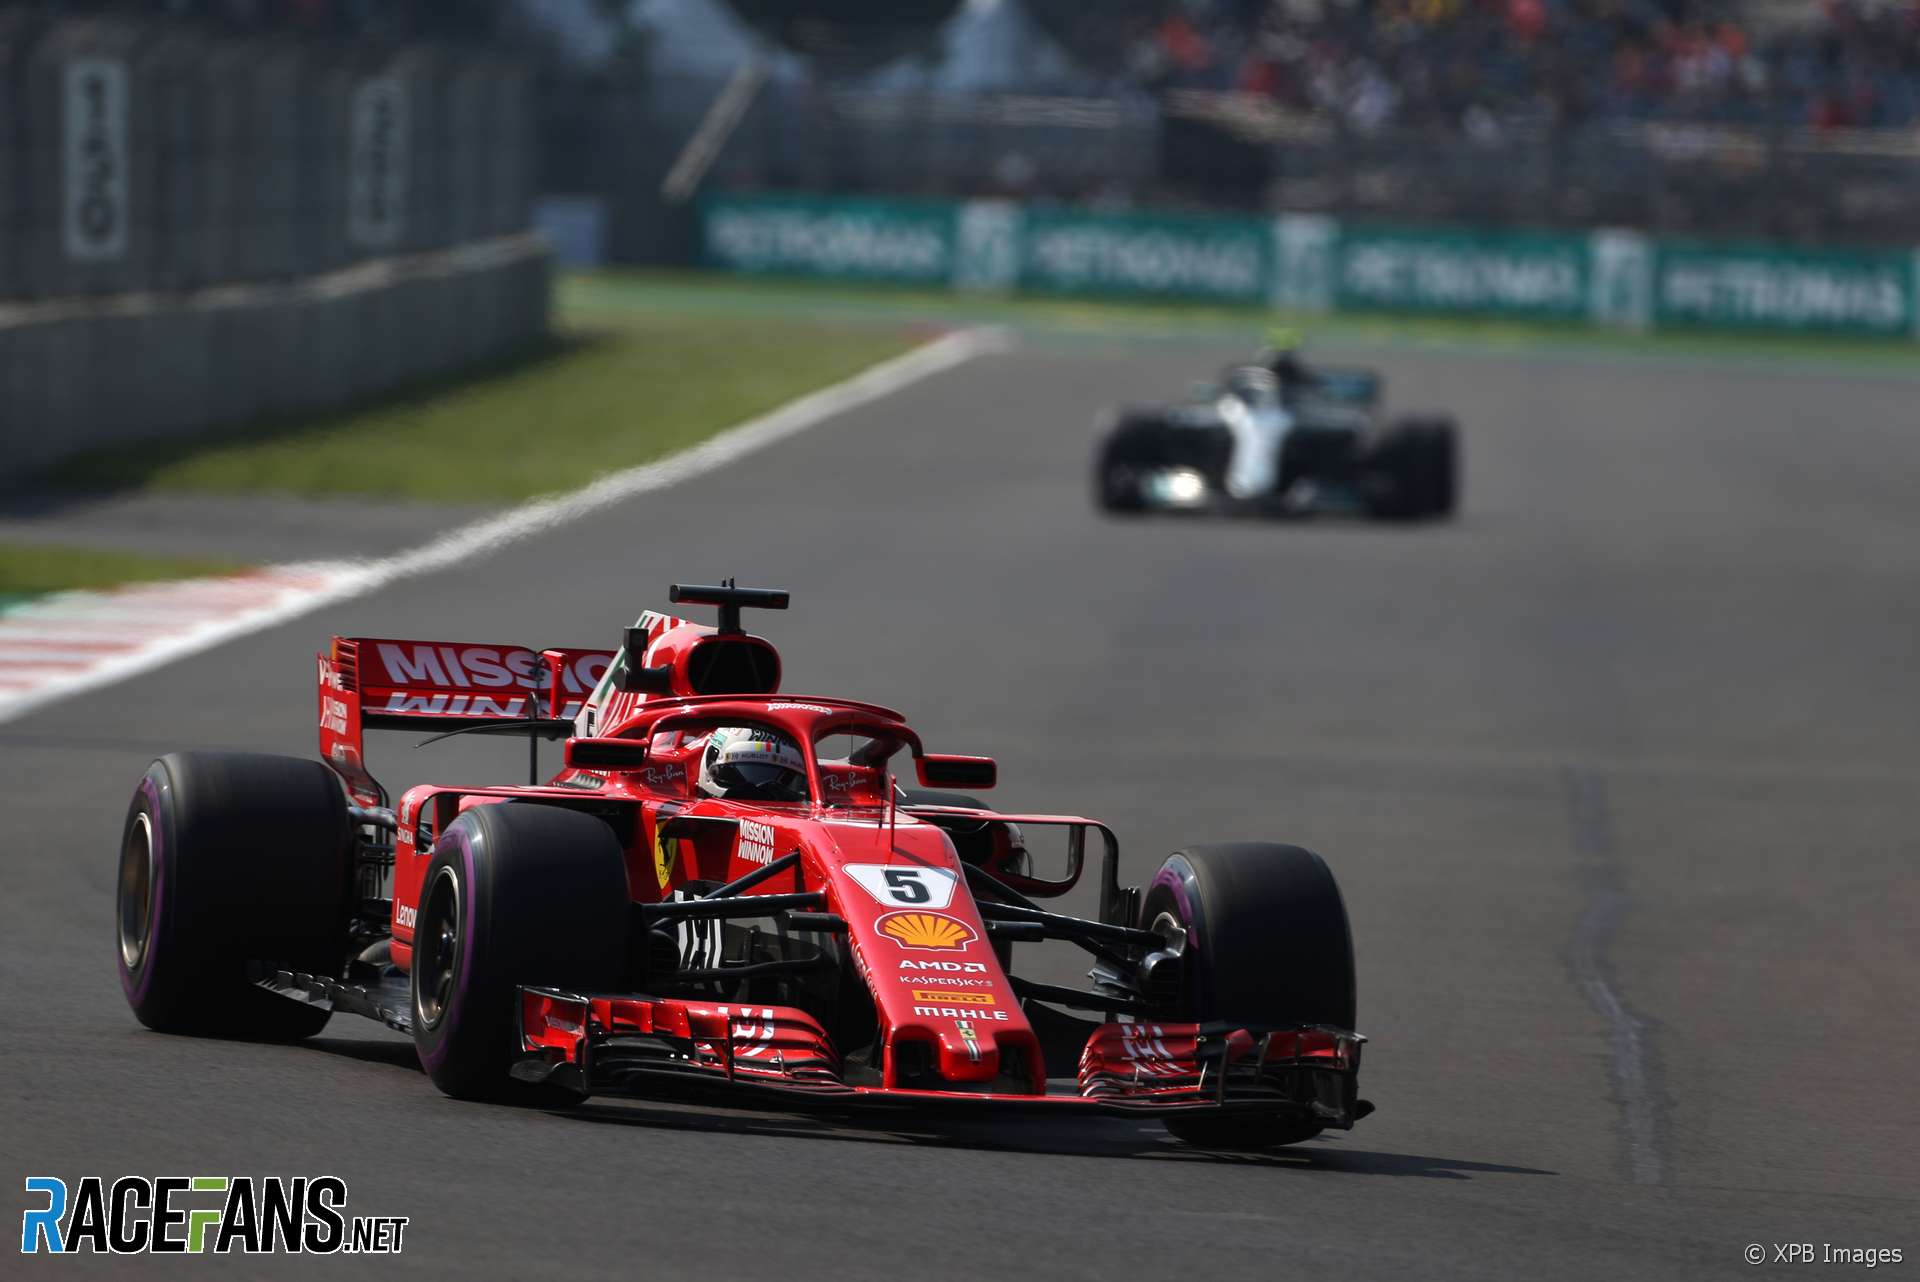 Sebastian Vettel, Ferrari, Autodromo Hermanos Rodriguez, 2018